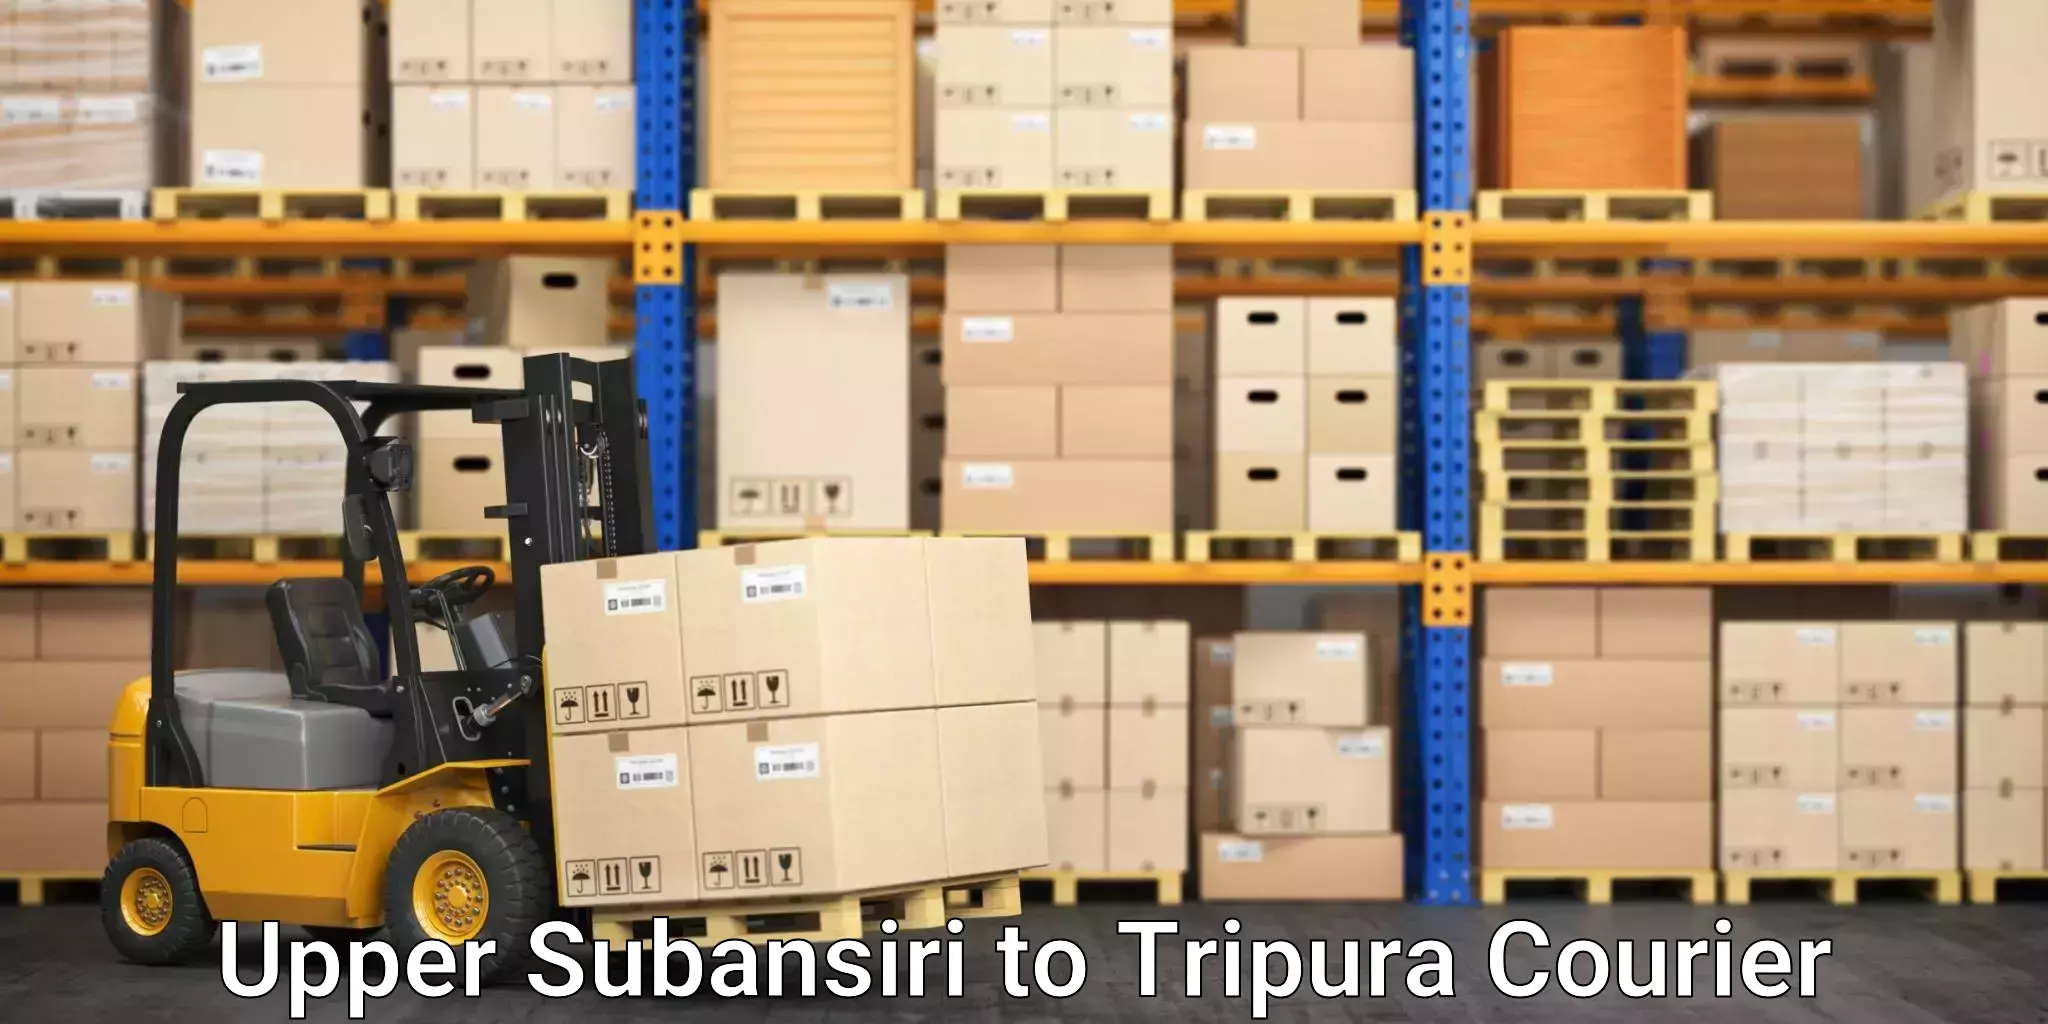 Premium courier solutions Upper Subansiri to Udaipur Tripura